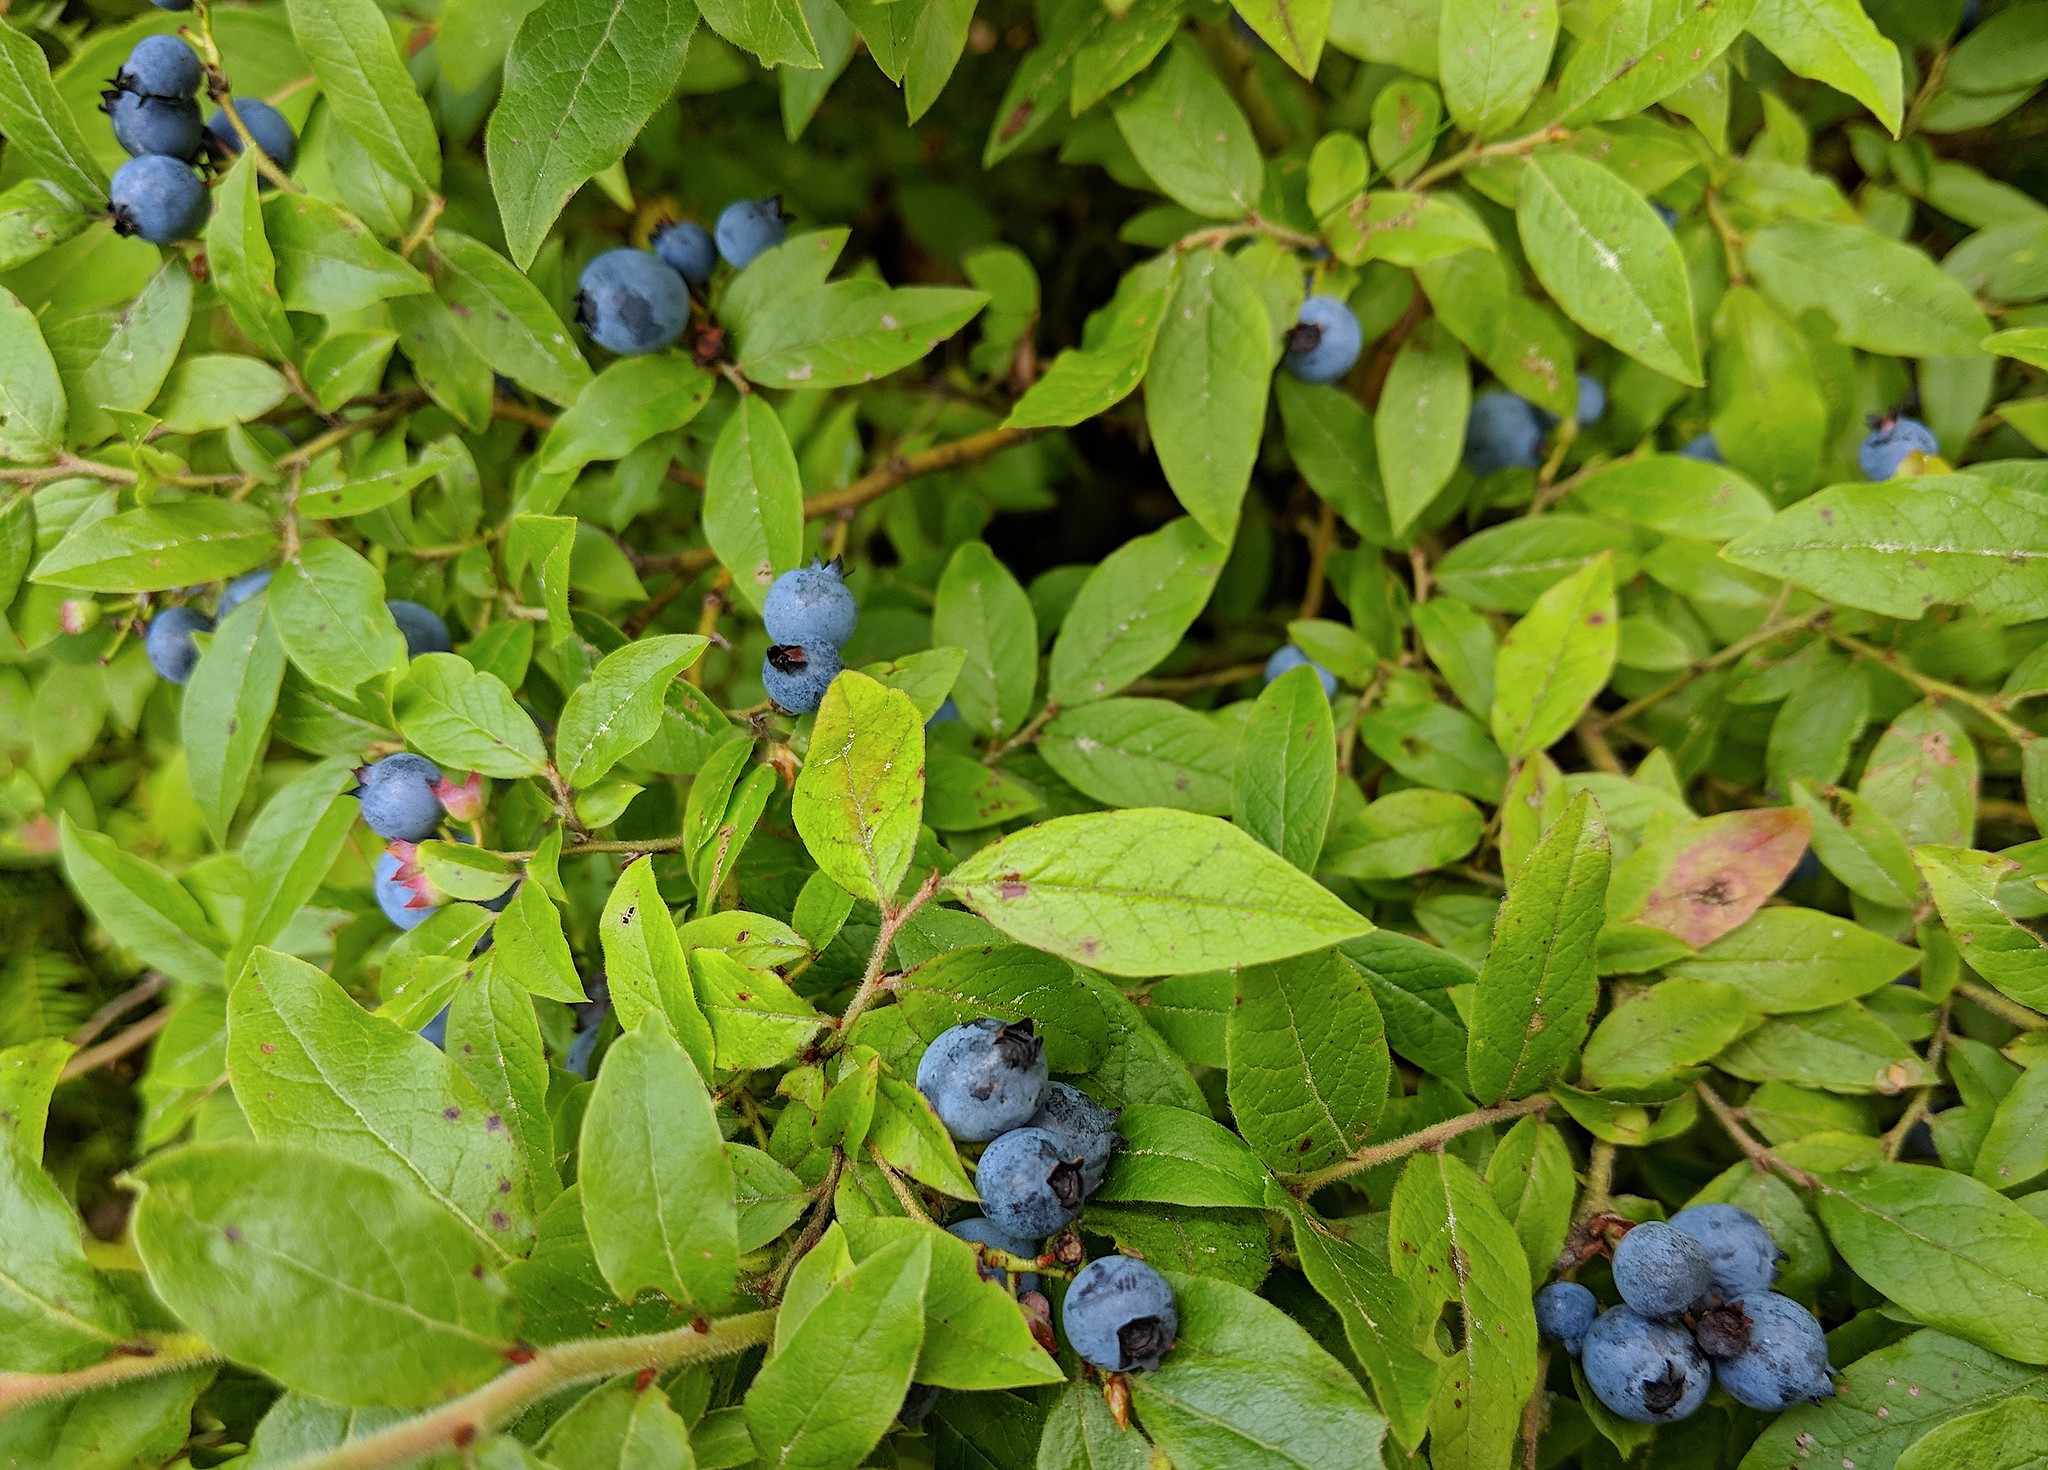 Wild blueberries. (photo © Scott Hecker)